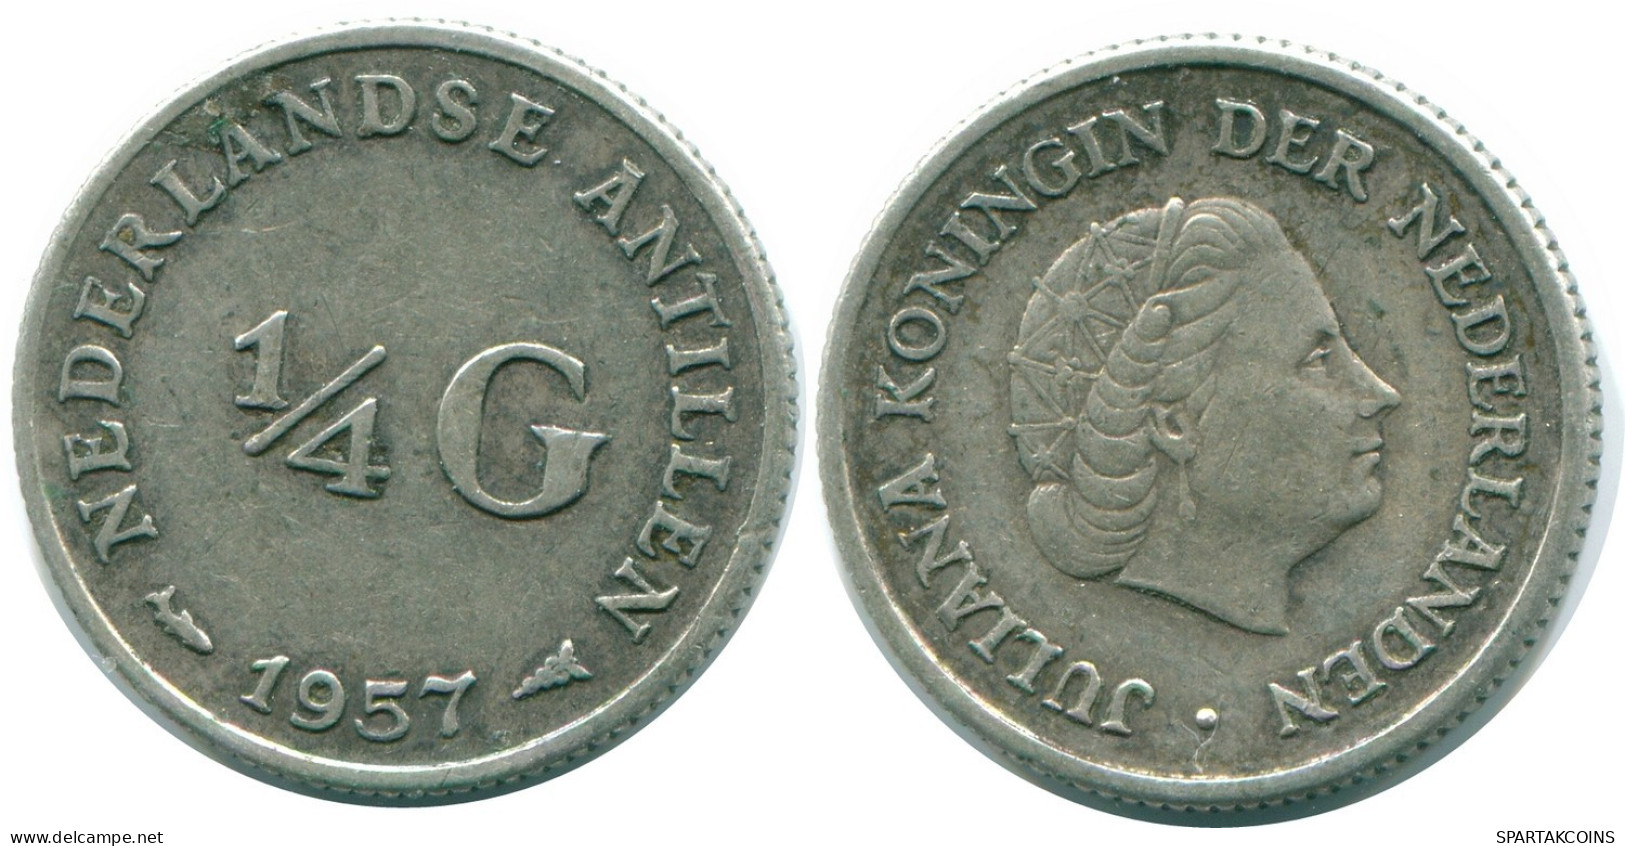 1/4 GULDEN 1957 NIEDERLÄNDISCHE ANTILLEN SILBER Koloniale Münze #NL10990.4.D.A - Niederländische Antillen